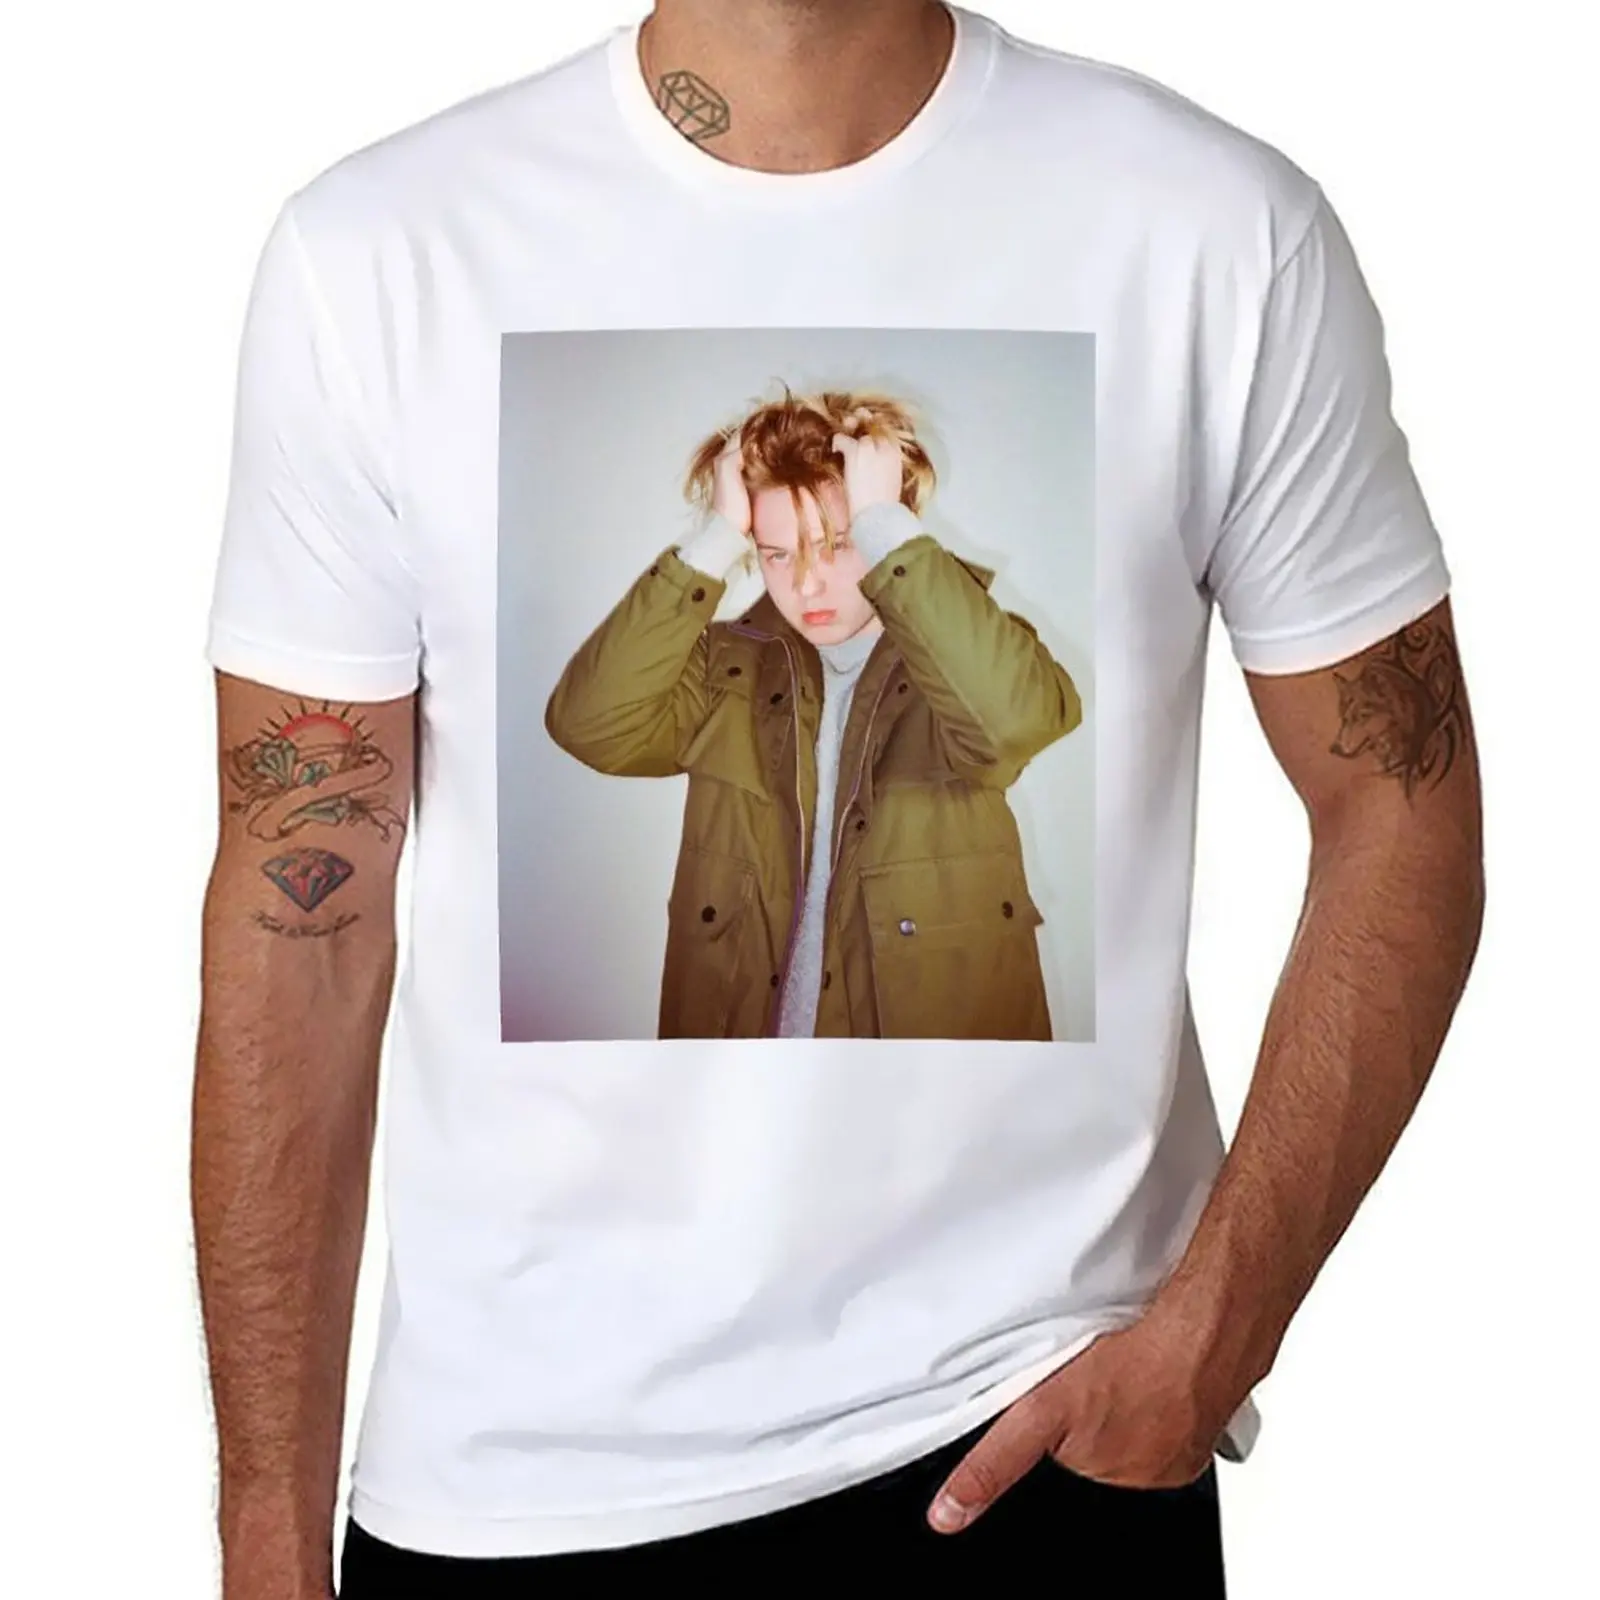 Новая футболка Weiland packrunner 2020 pluggnb Soundcloud rapper, аниме-футболка, футболки с графическим рисунком, летние мужские футболки